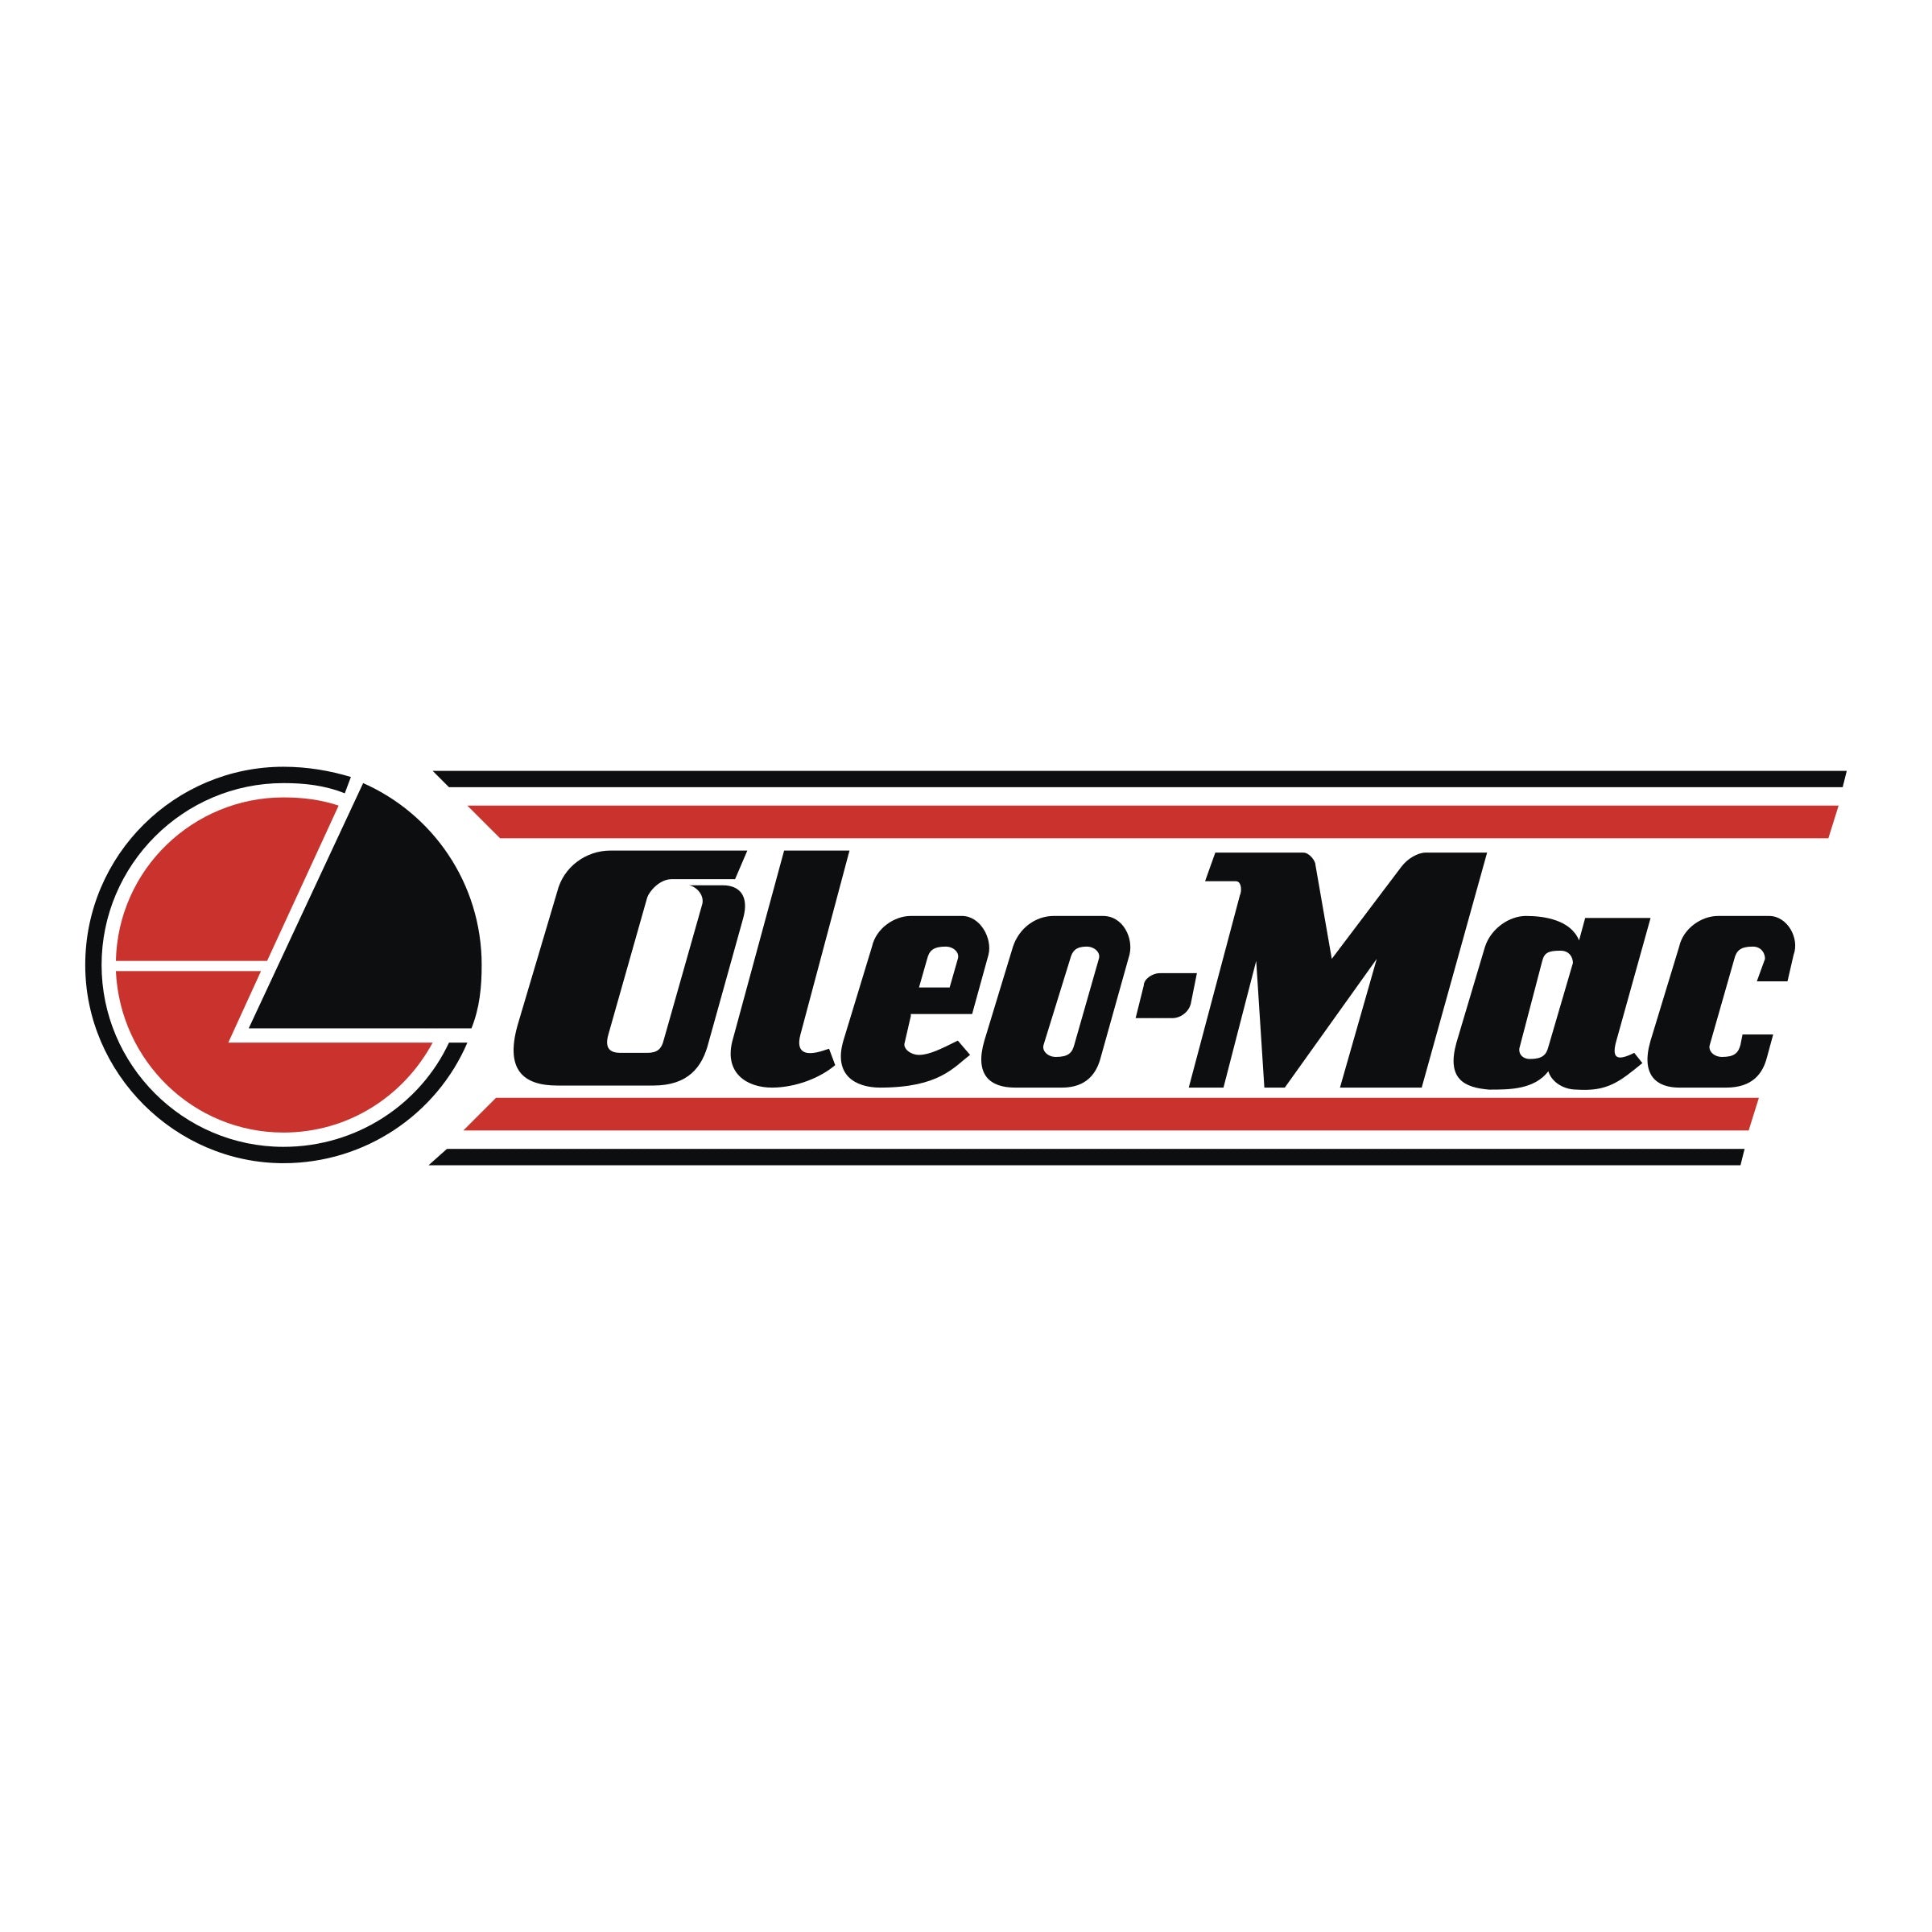 Oleo-Mac Lawn & Garden Equipment